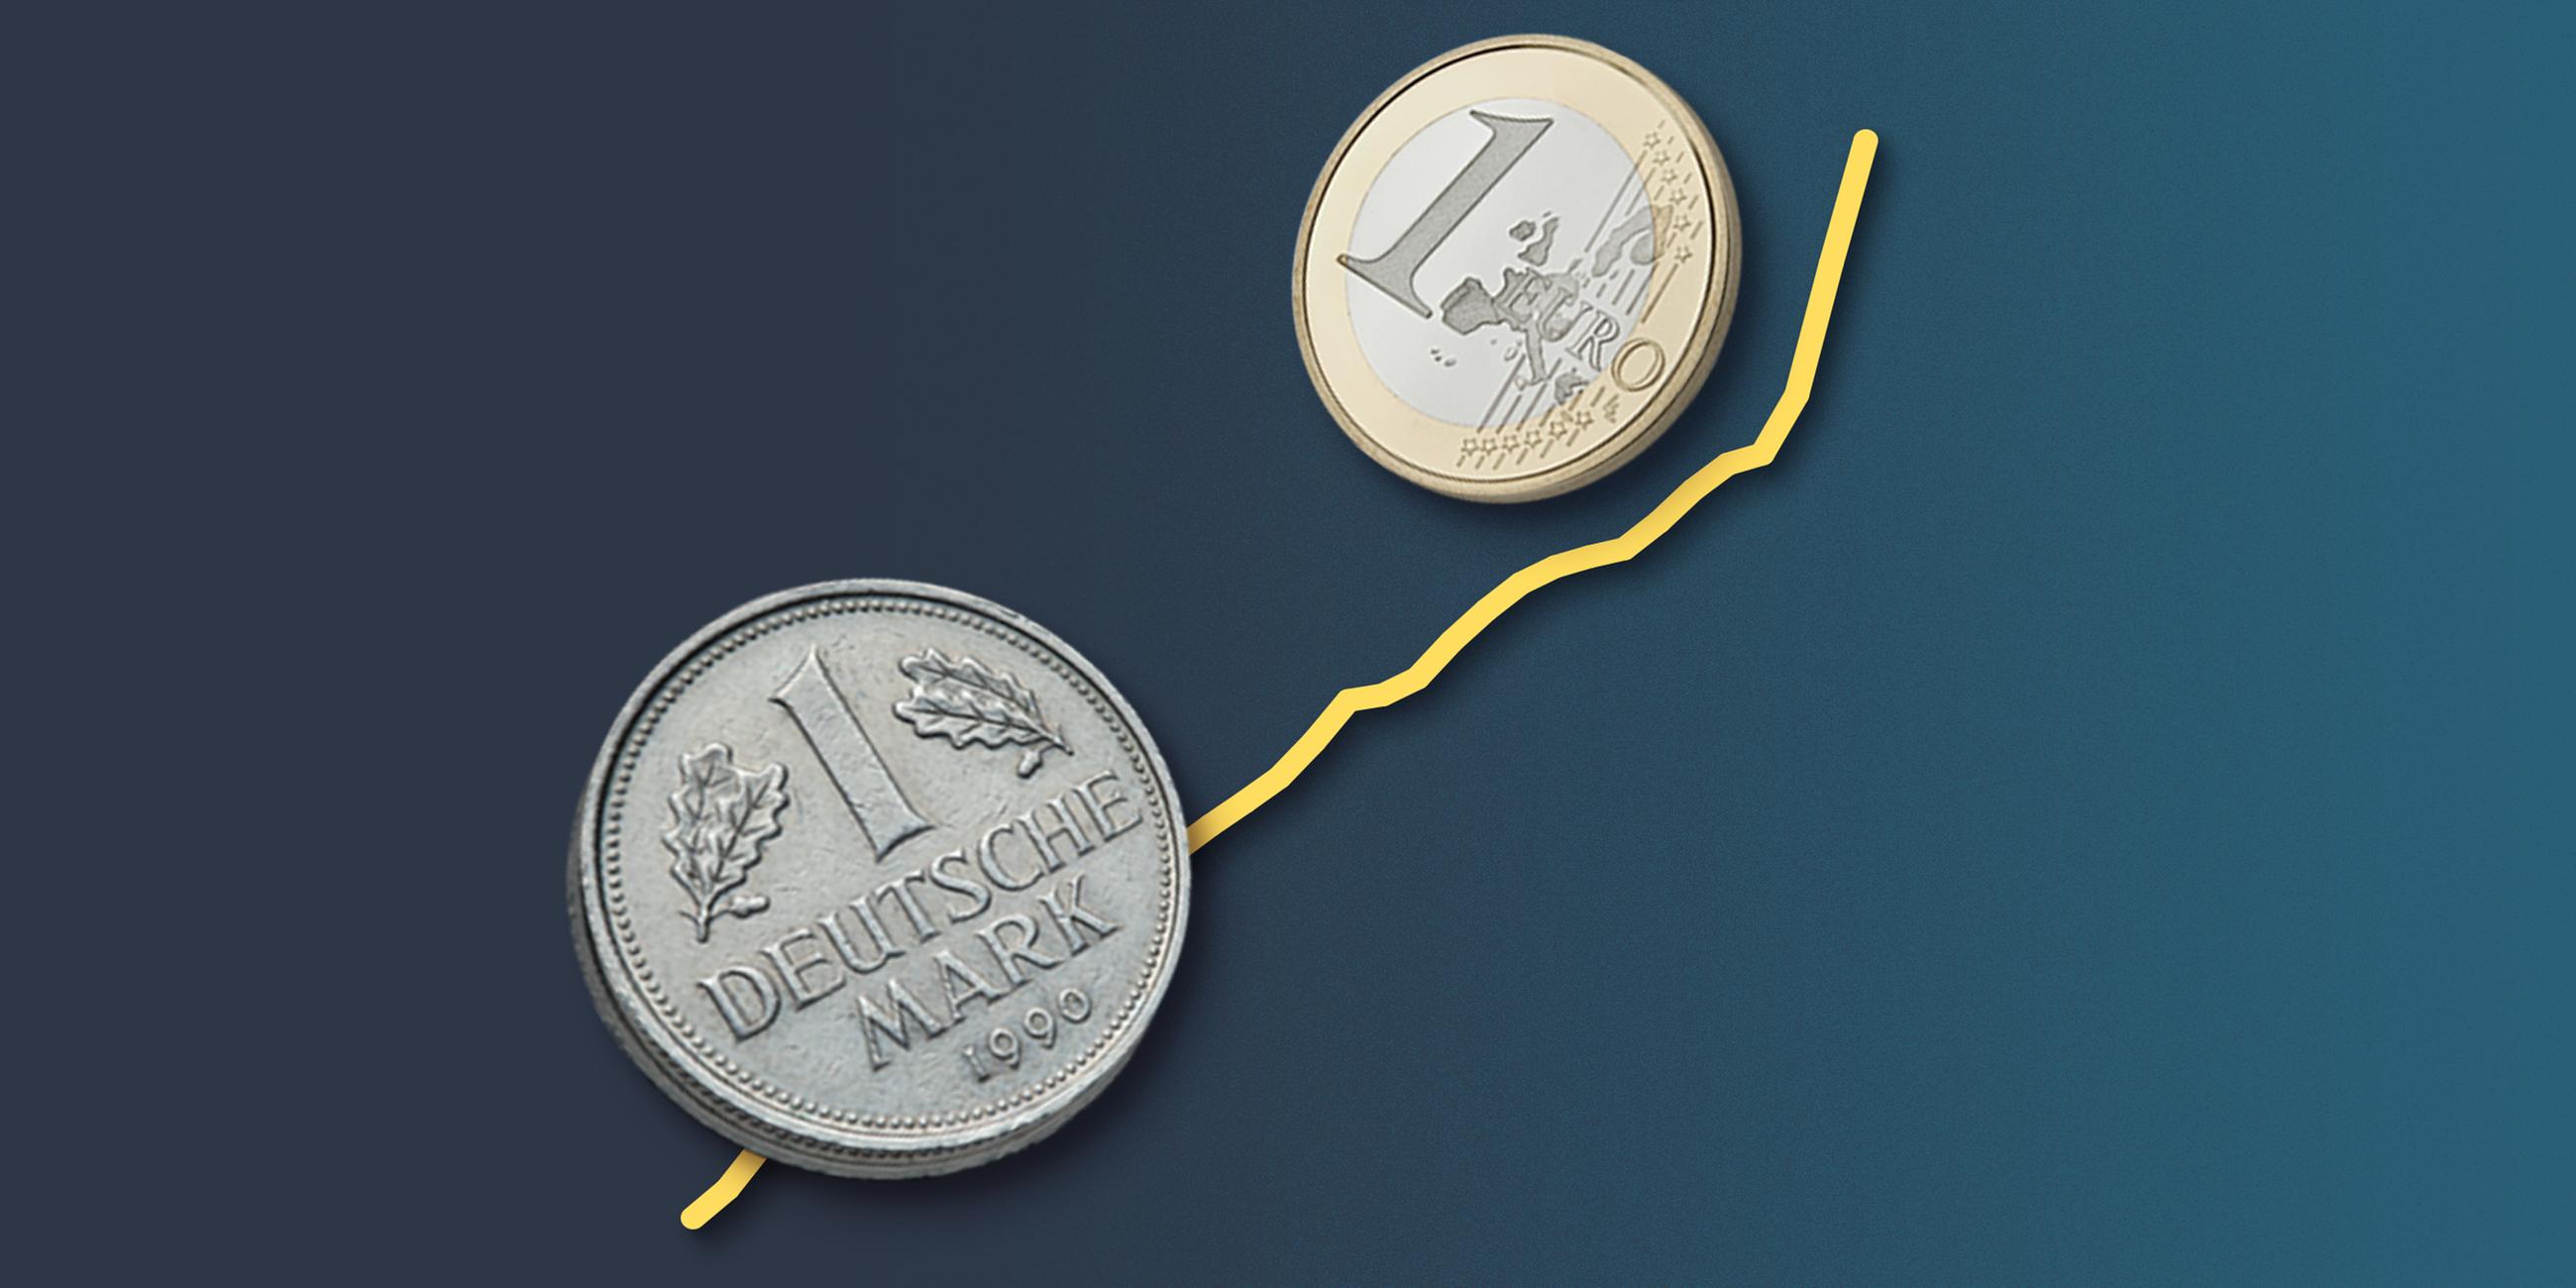 Das Bild zeigt die Münzen einer D-Mark und eines Euros sowie eine Inflationskurve